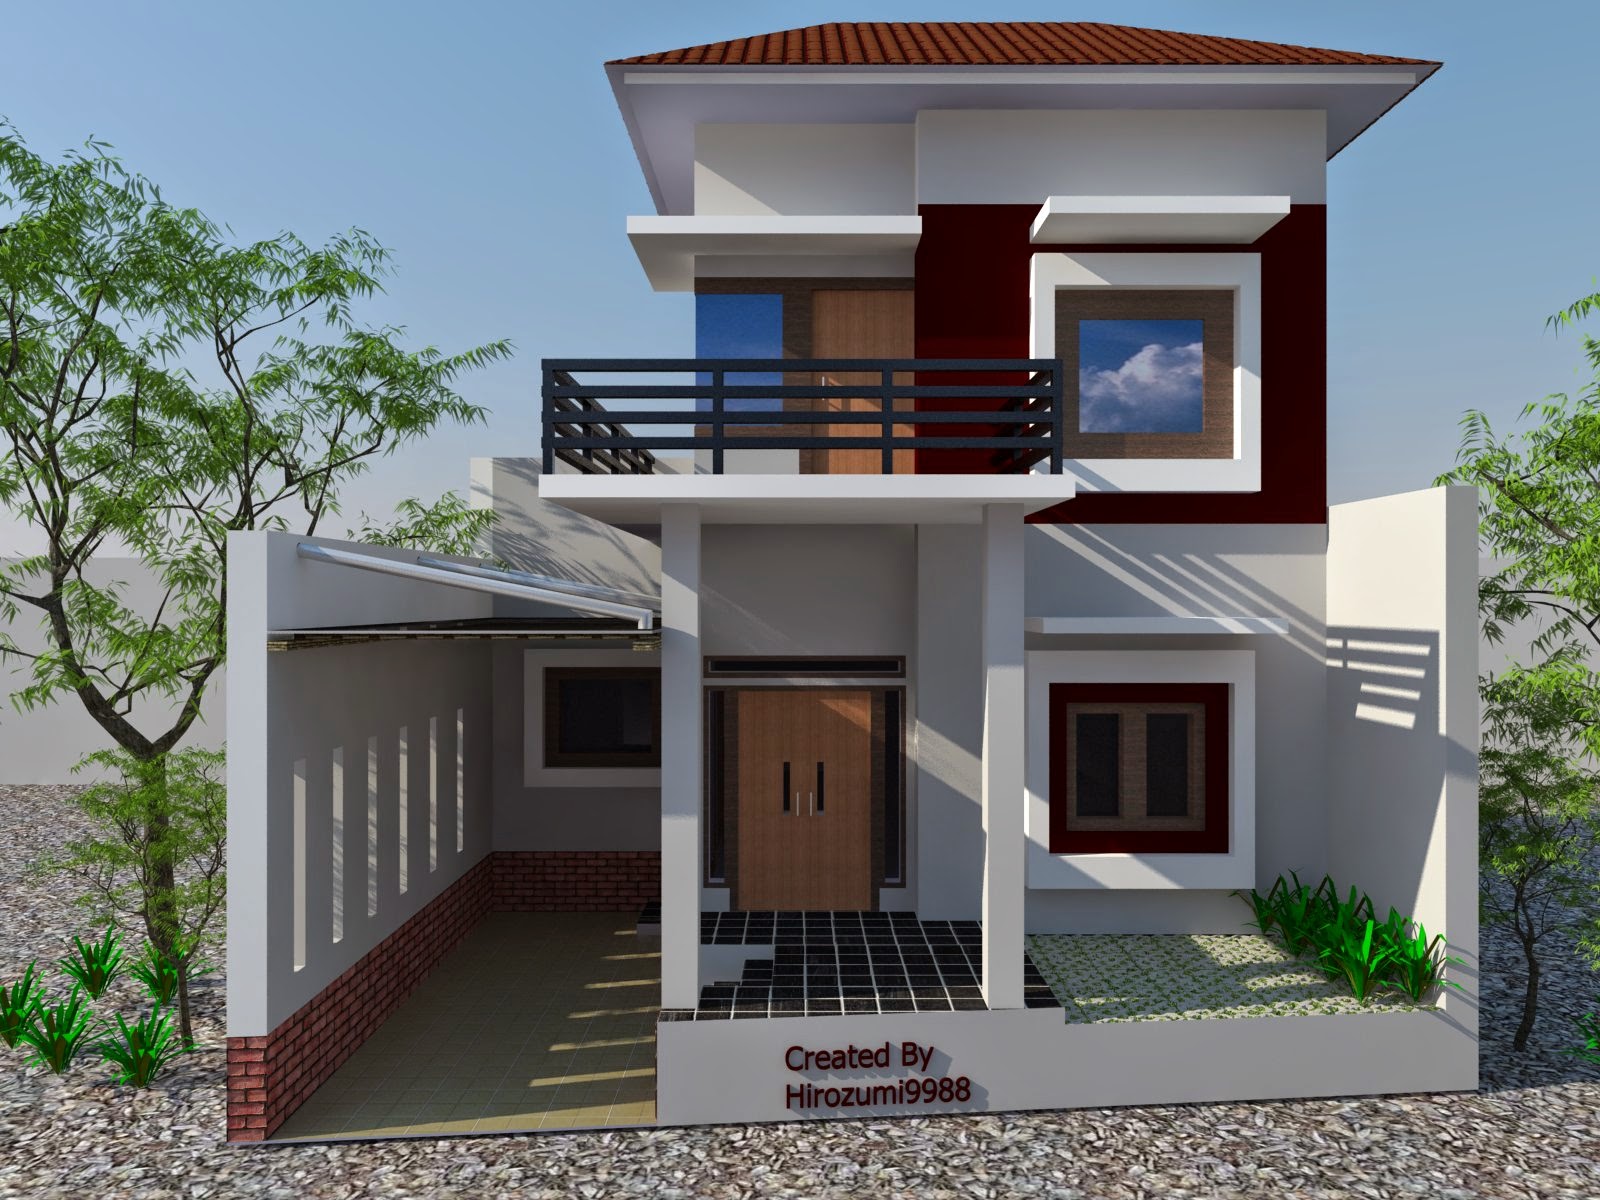 Gambar Rumah Kecil Minimalis Sederhana 2 Lantai Desain Rumah